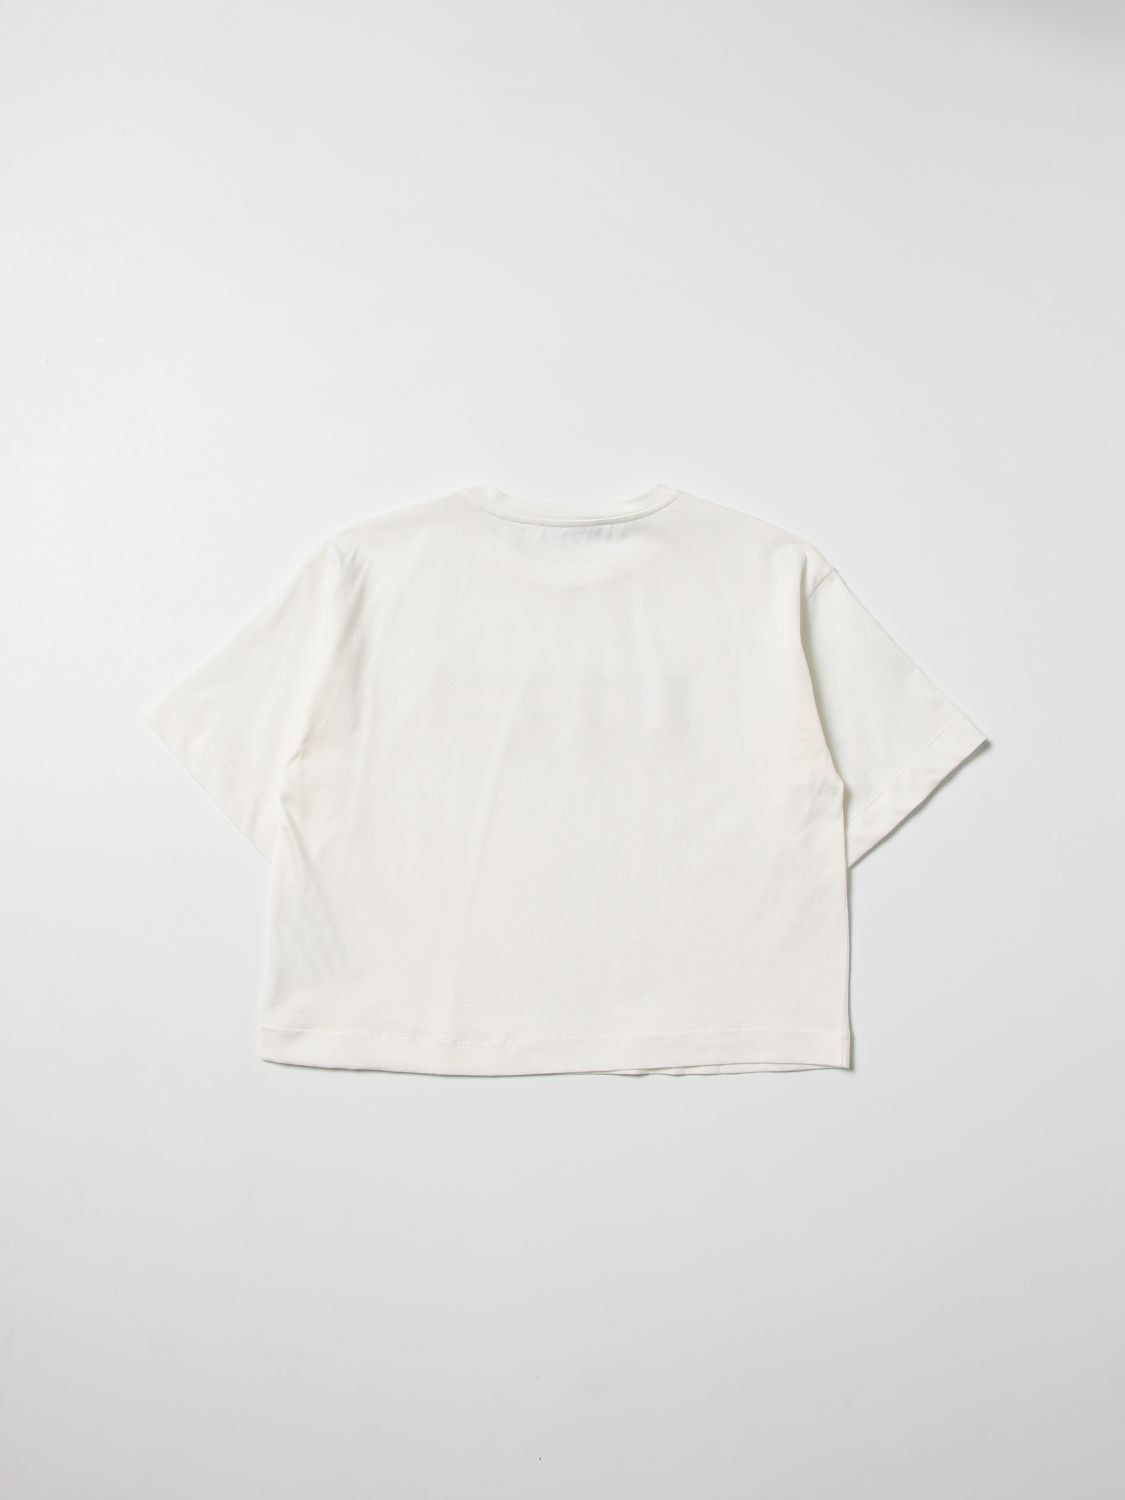 Emilio Pucci Outlet: logo T-shirt - White 1 | Emilio Pucci t-shirt